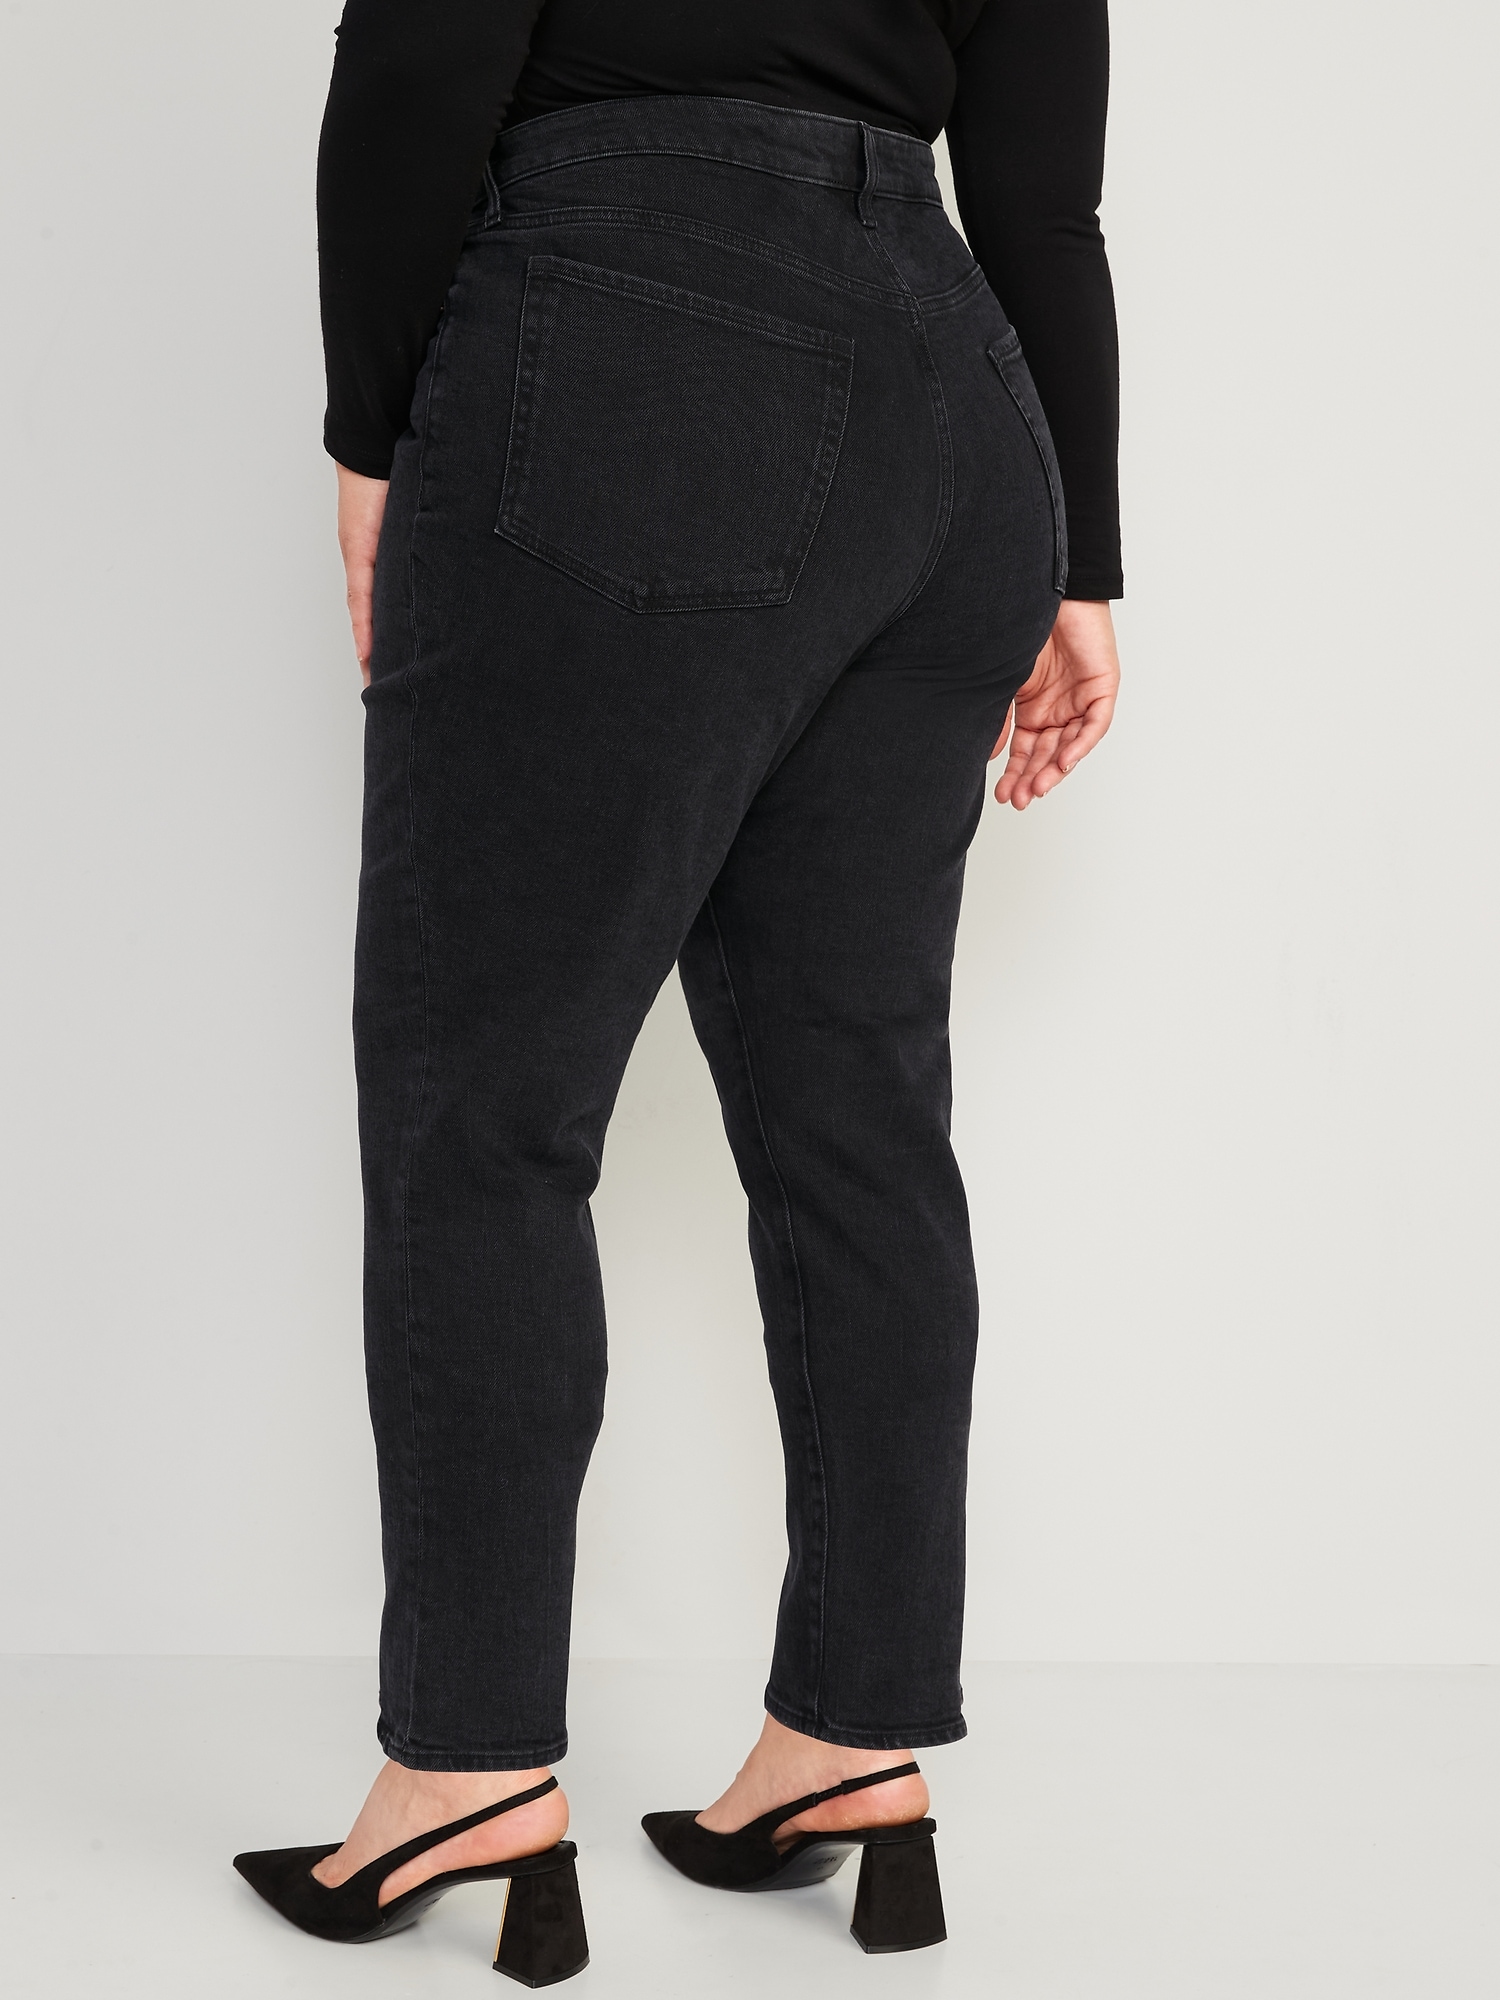 High-Waisted OG Straight Black Jeans for Women | Old Navy